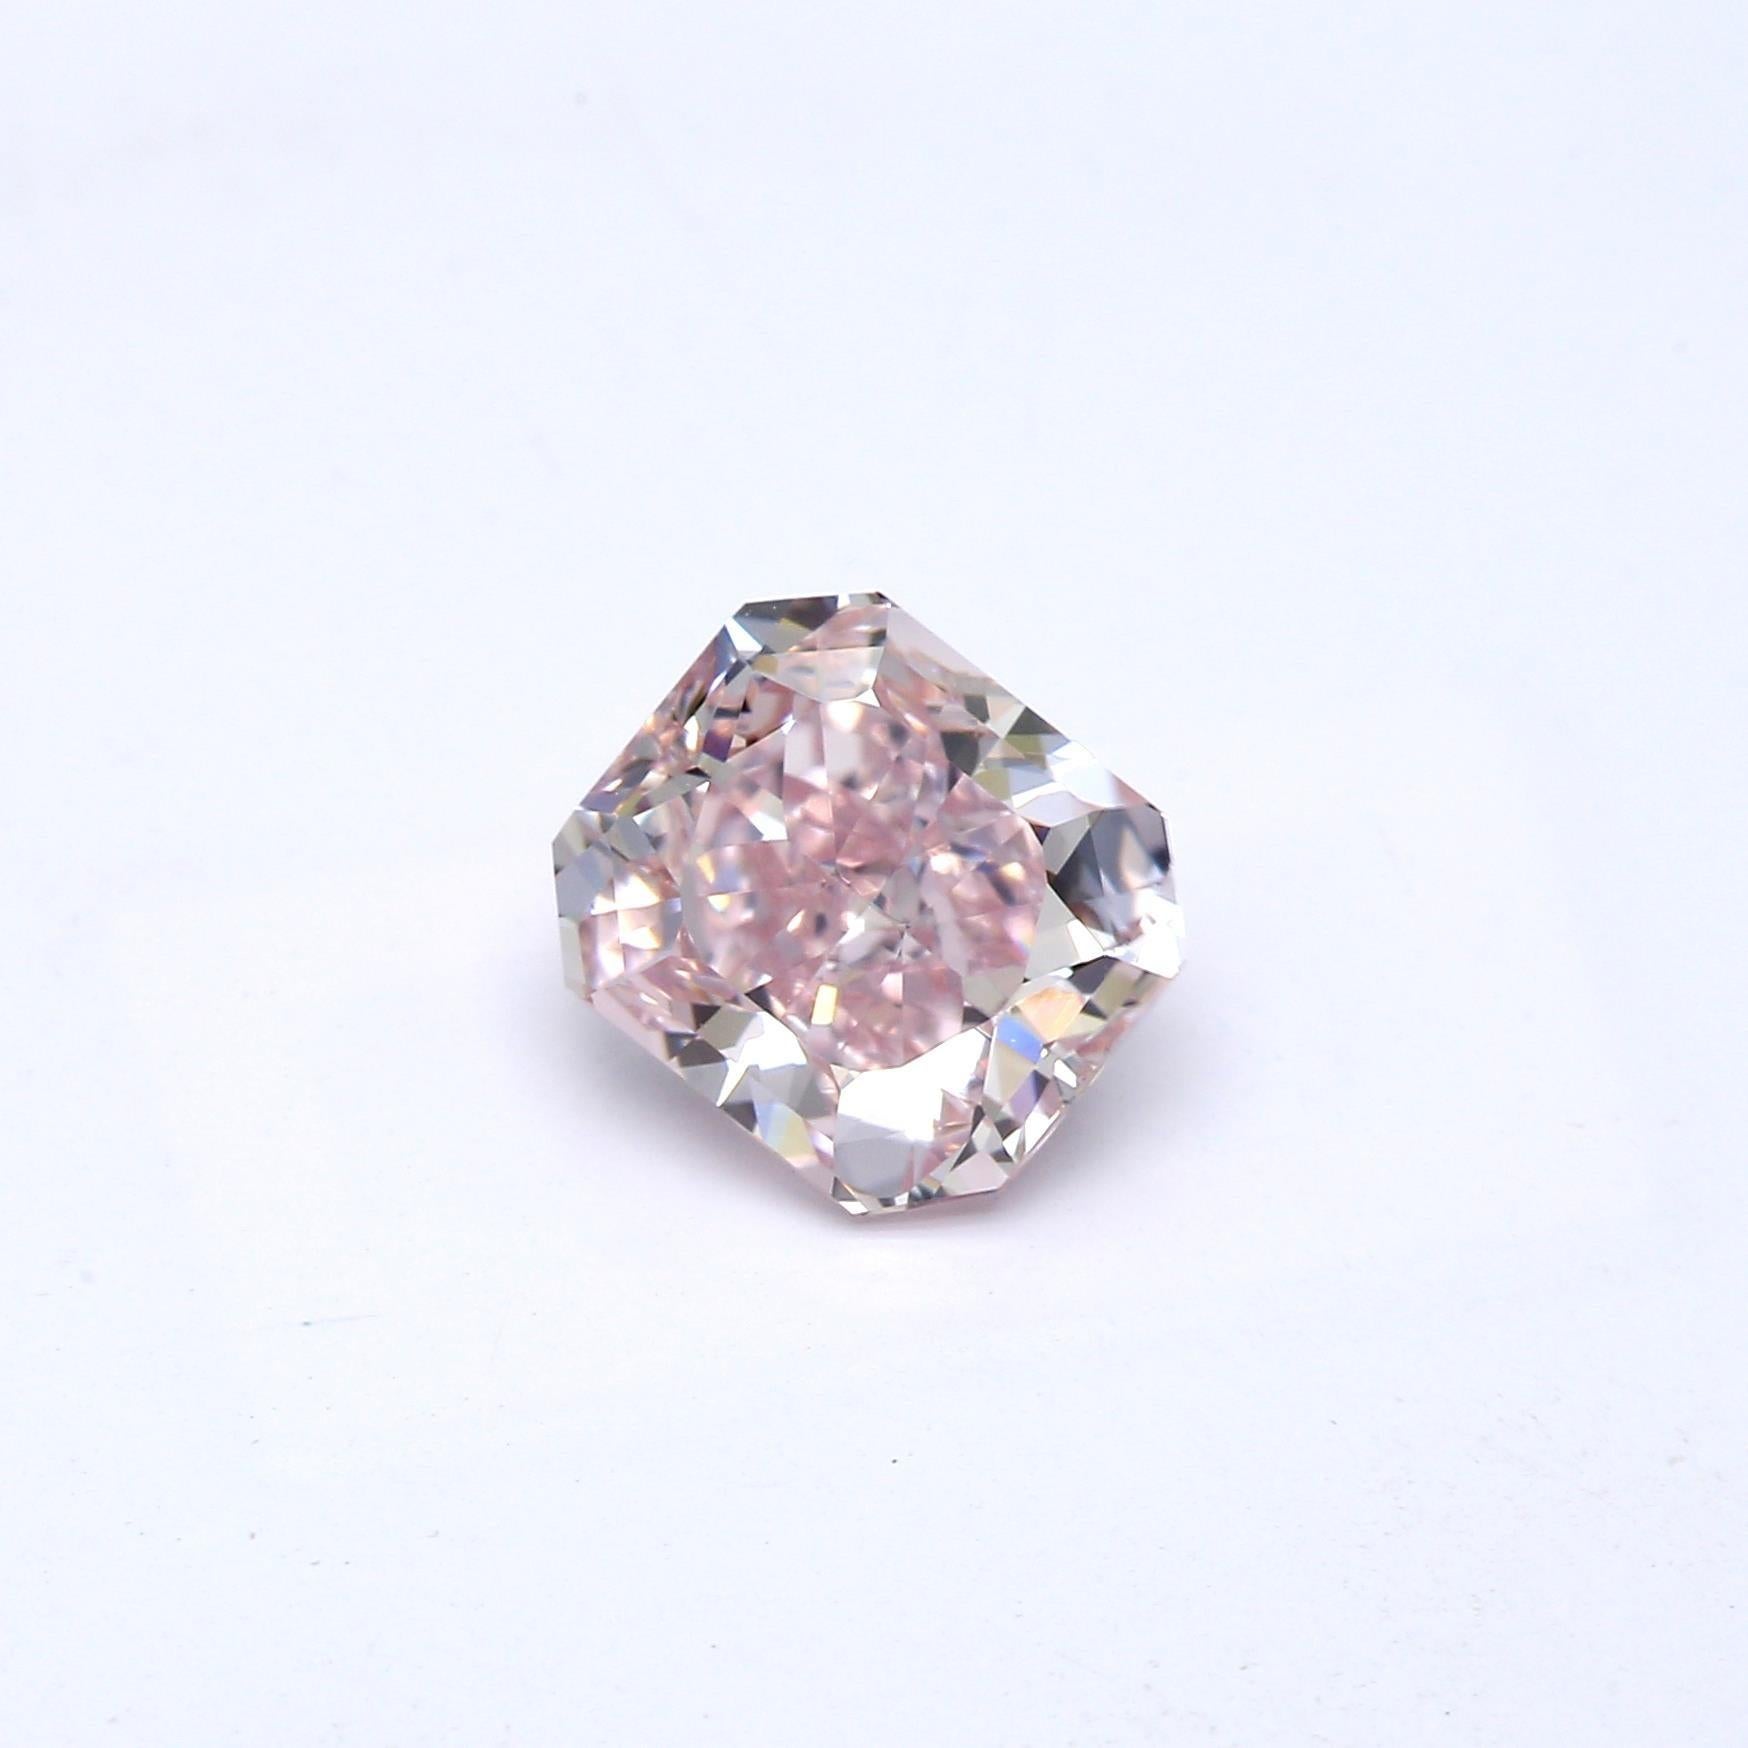 2 carat pink diamond ring